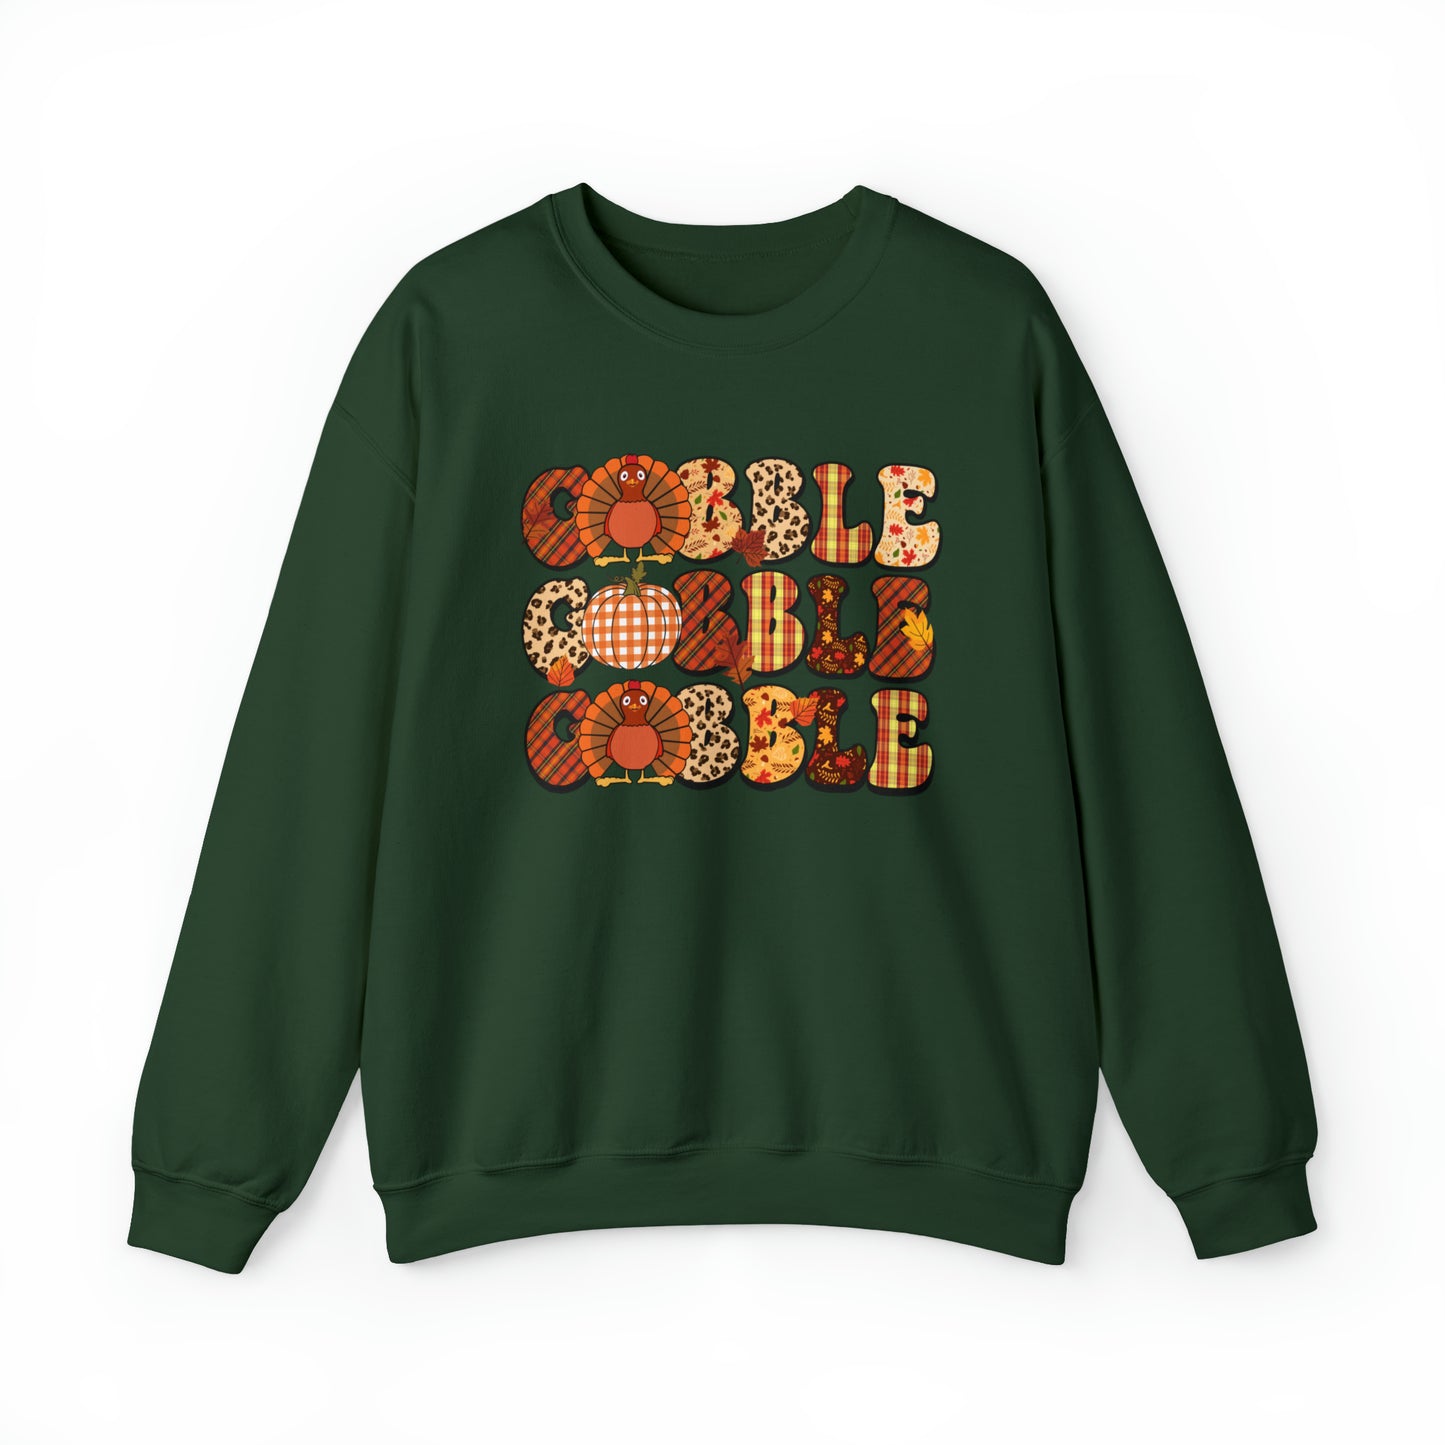 Gobble Gobble Thanksgiving Sweatshirt, Fall Family Dinner Turkey Shirt, Gift For Thanksgiving, Funny Turkey Thanksgiving Day Sweater